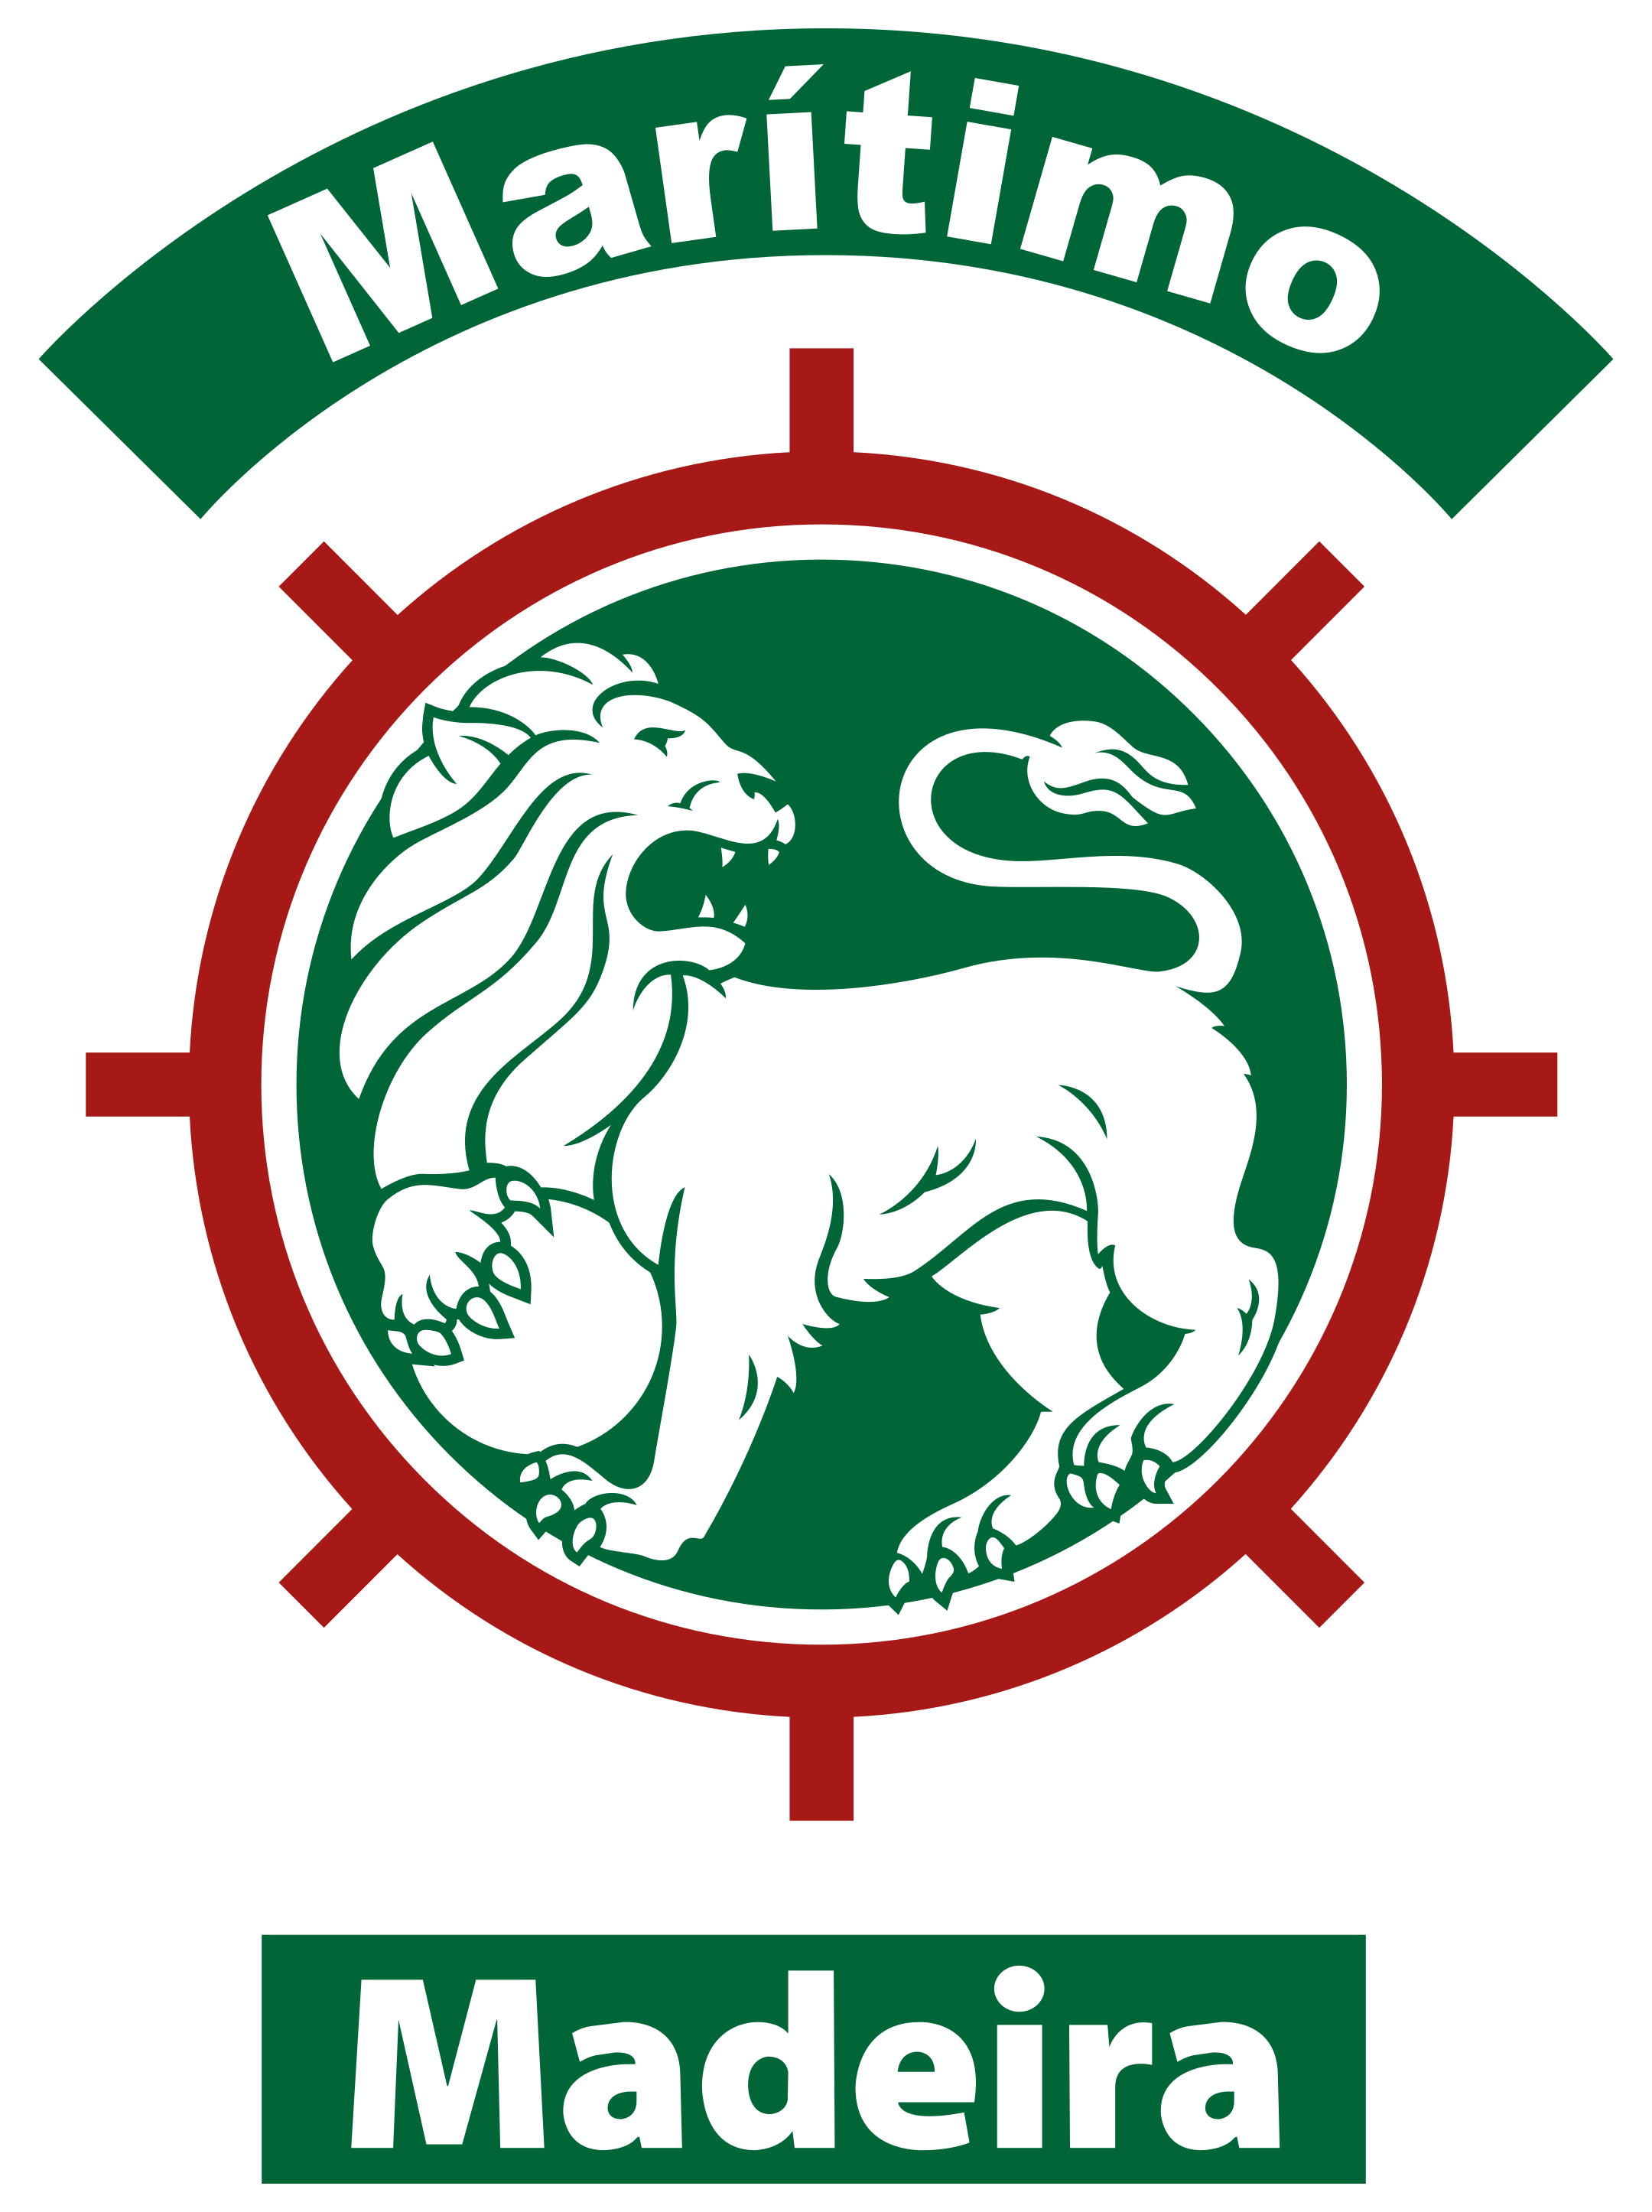 cs maritimo logo 1 - Club Sport Marítimo Logo